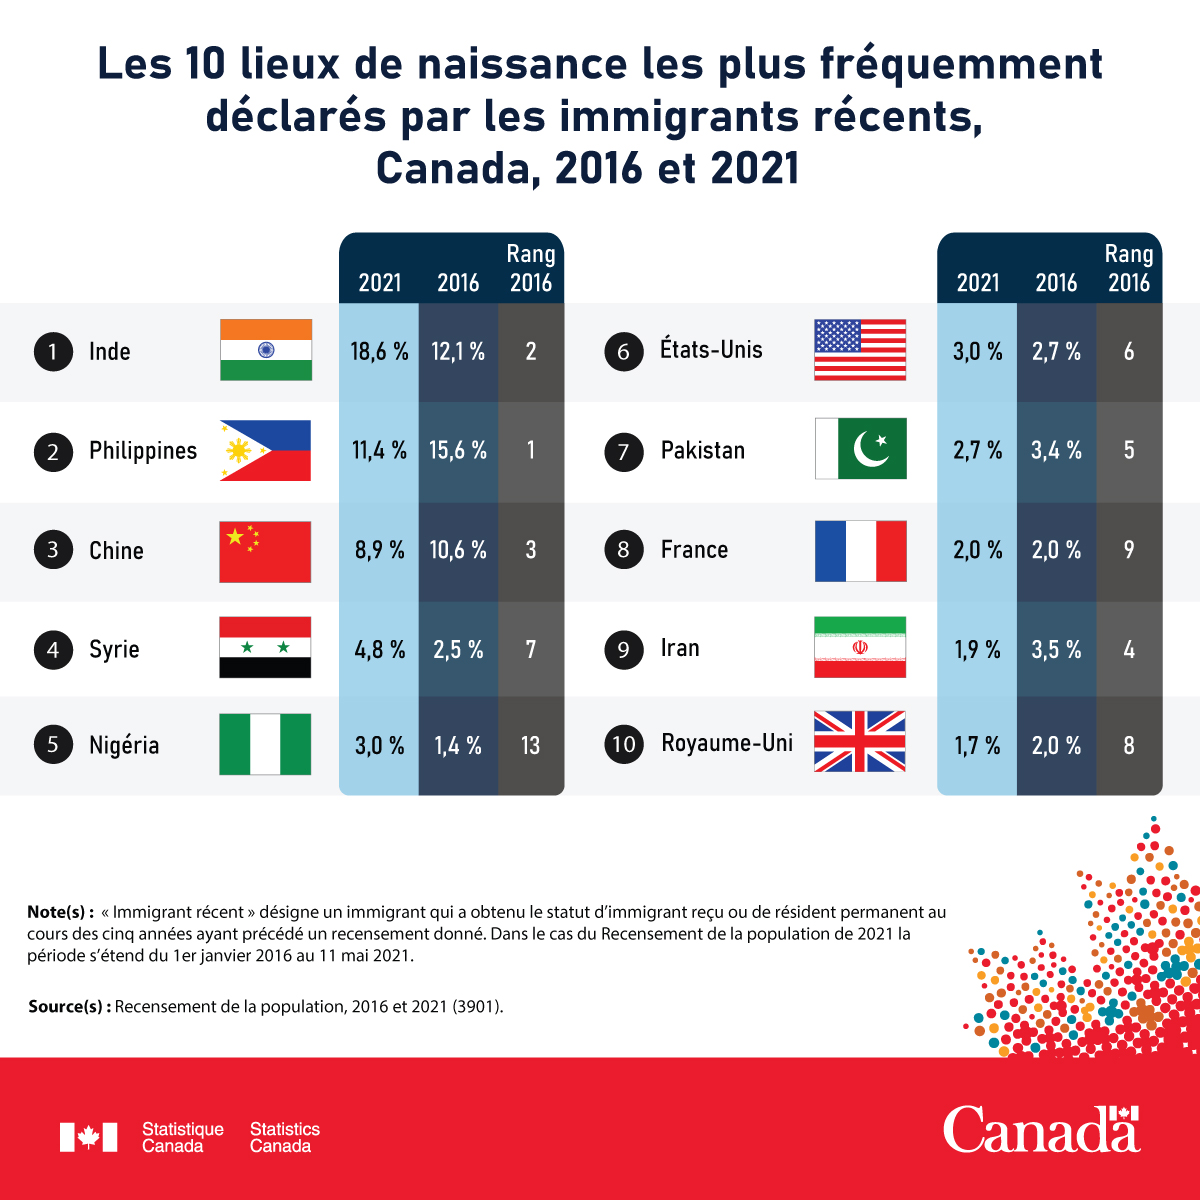 Les 10 lieux de naissance les plus fréquemment déclarés par les immigrants récents, Canada, 2016 et 2021